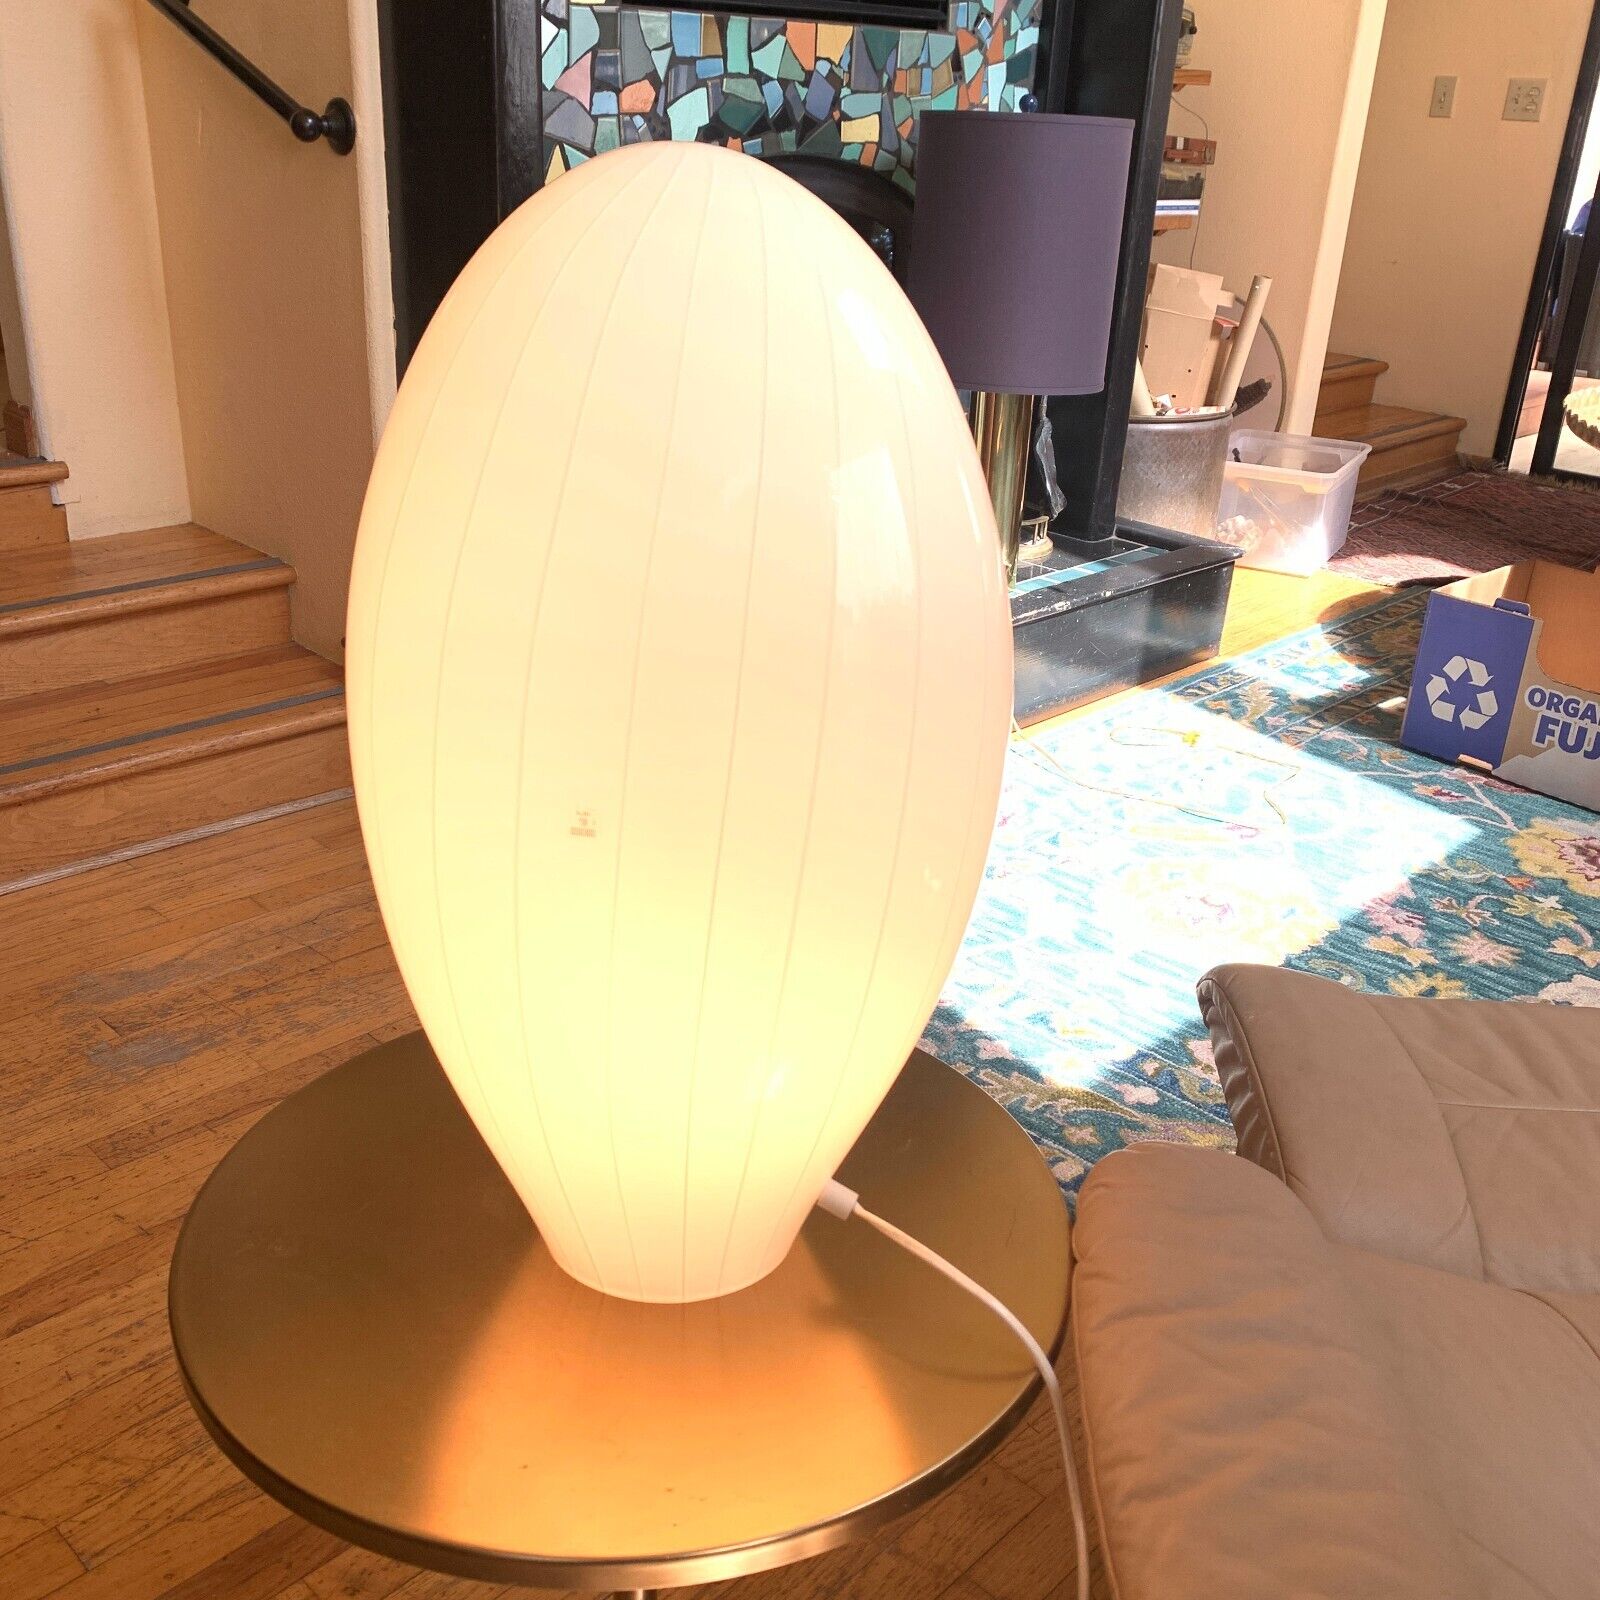 Vetri Murano Glass Egg Lamp 70s Mod Space Age MCM Italy BIOMORPHIC w/Sticker 20\